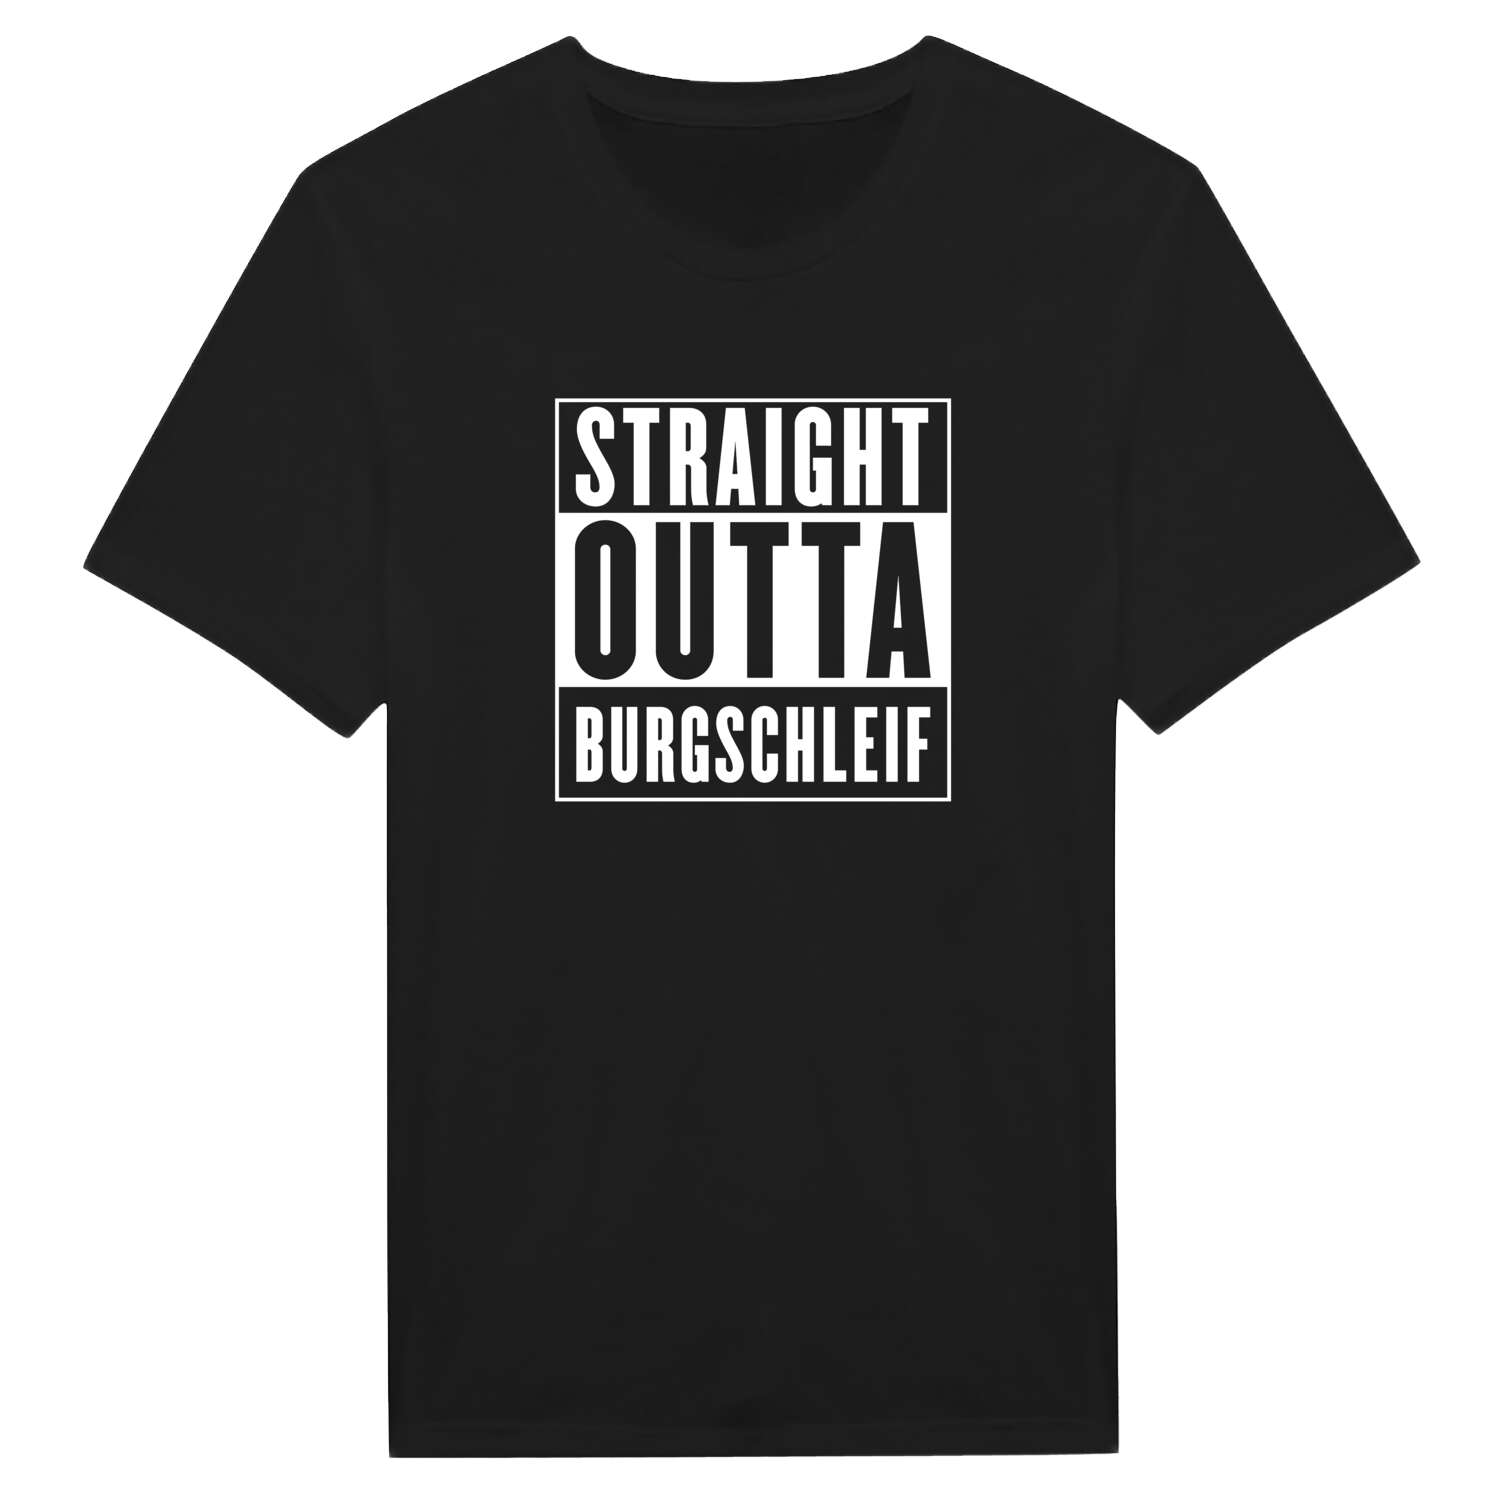 Burgschleif T-Shirt »Straight Outta«